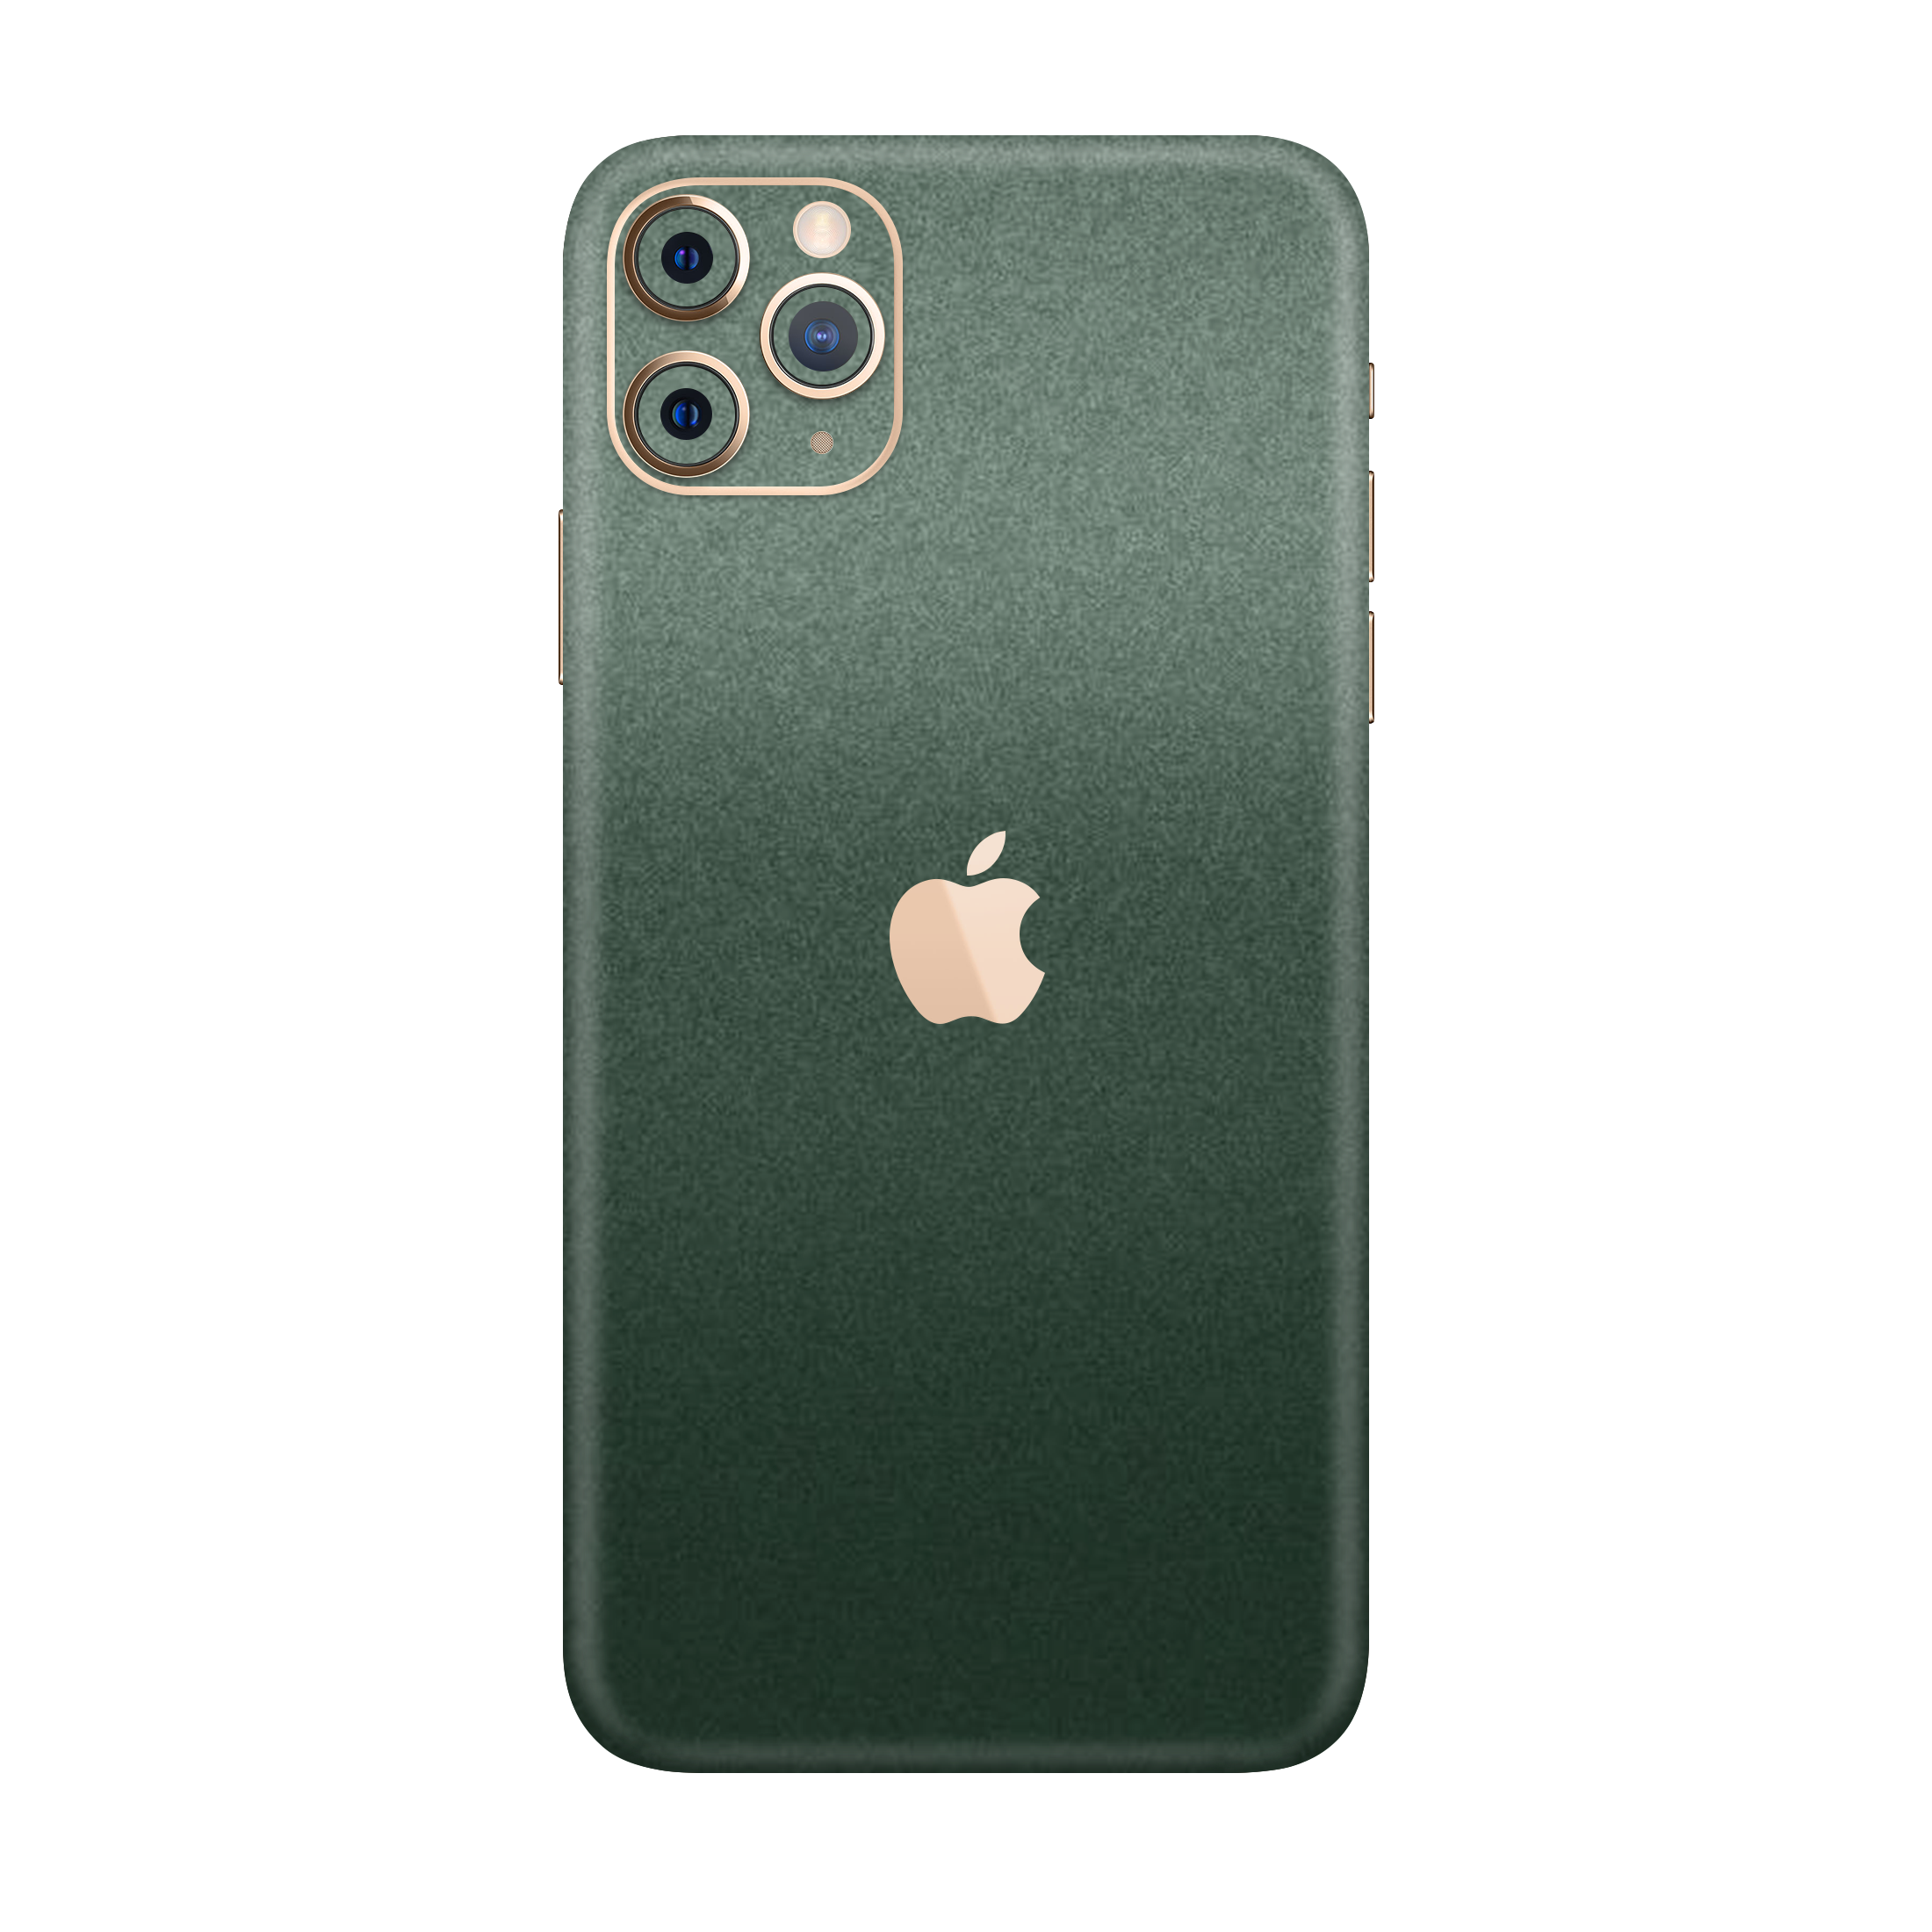 Pine Green Metallic Skin For iPhone 11 Pro Max